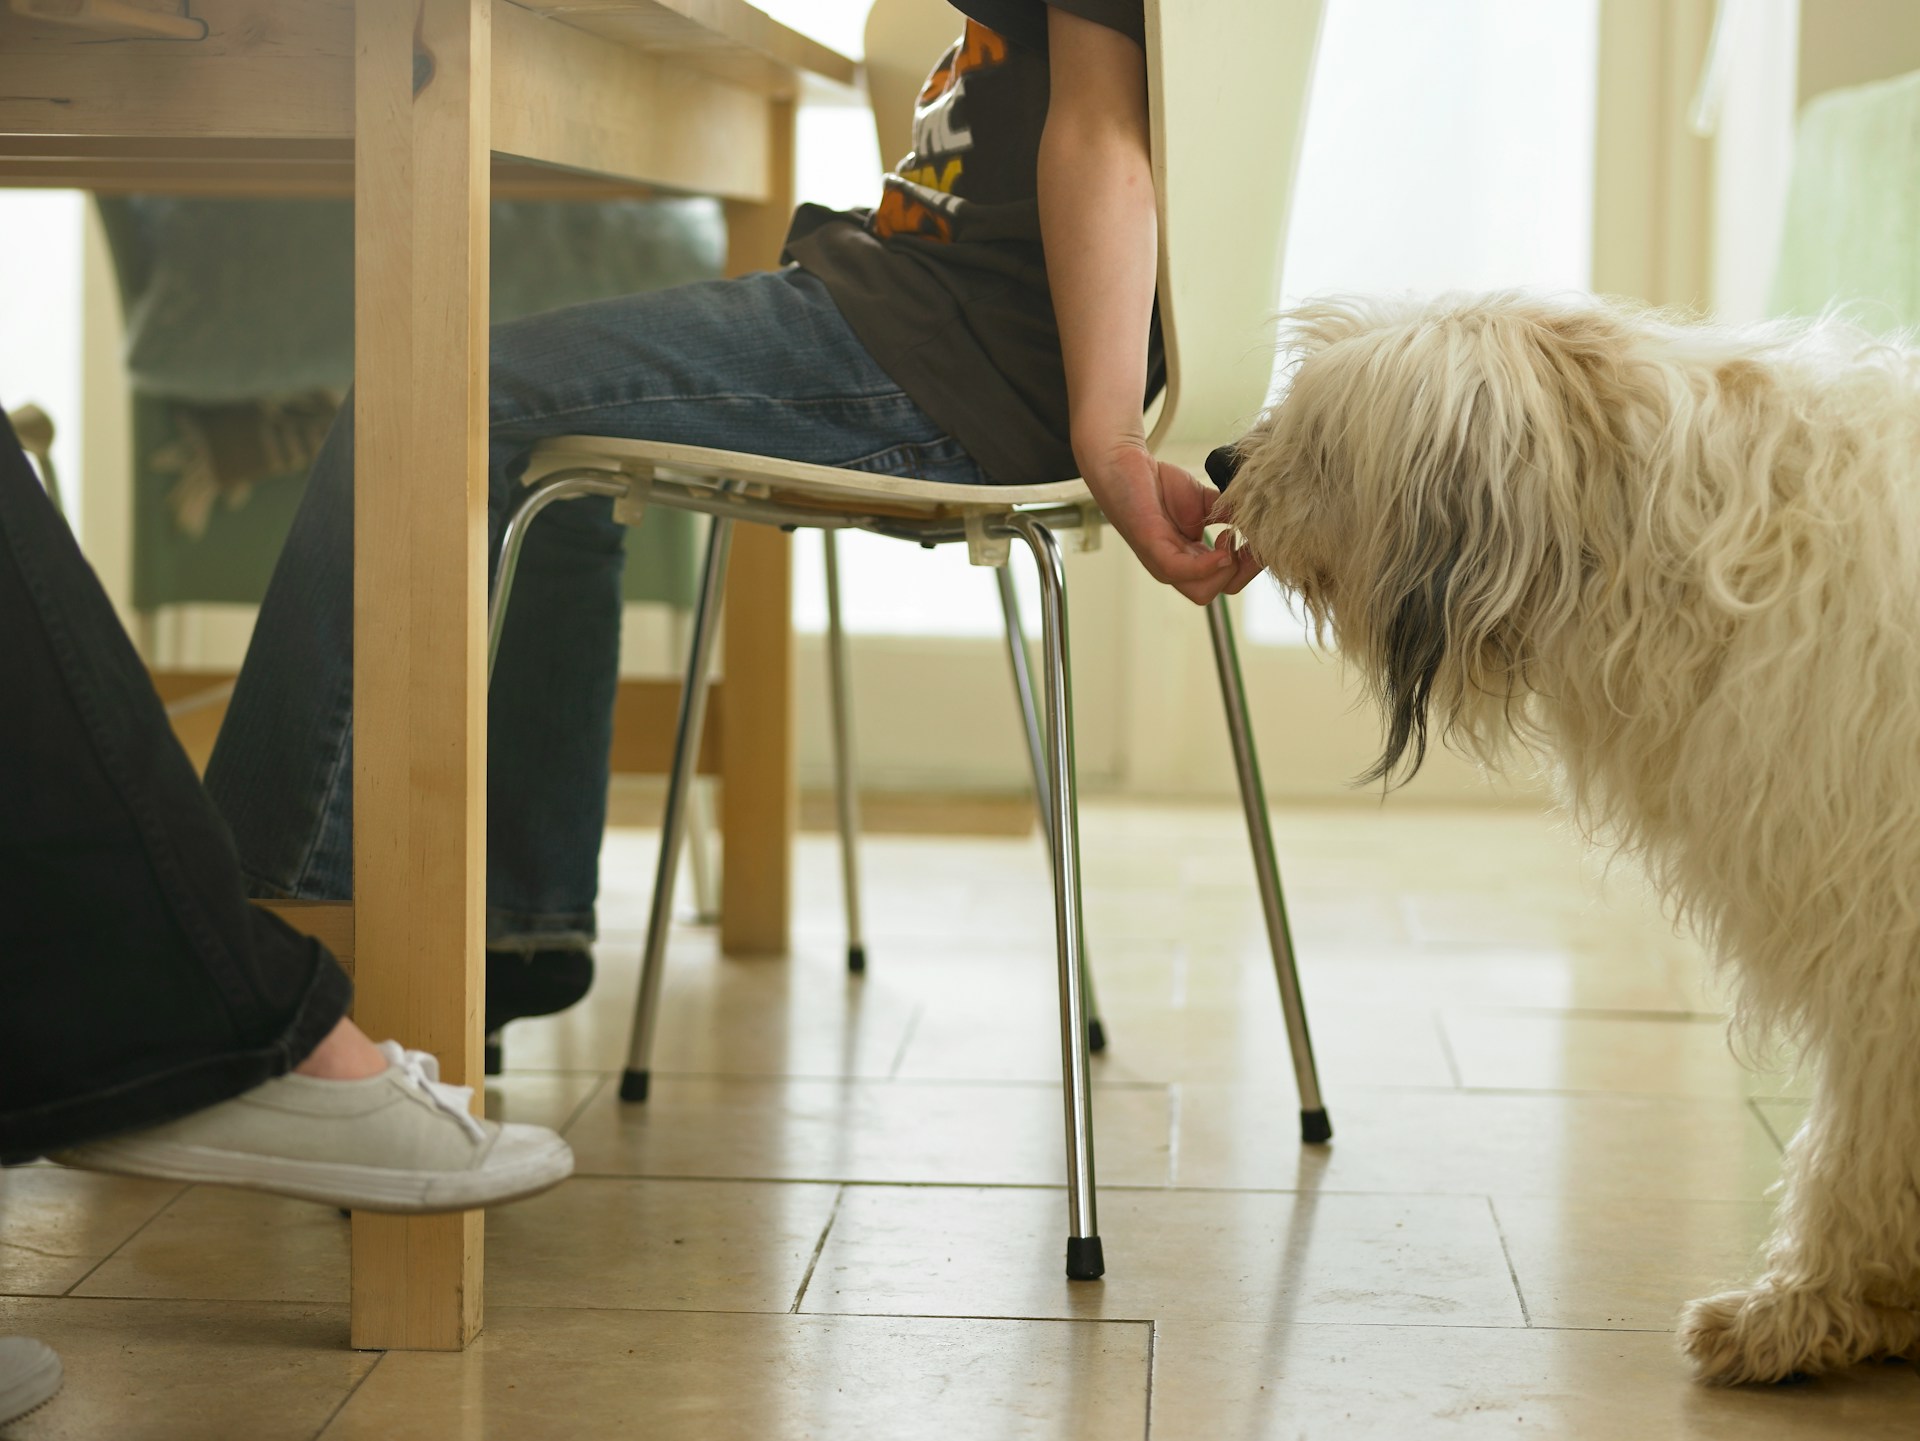 A child sitting on a chair secretly feeding a dog